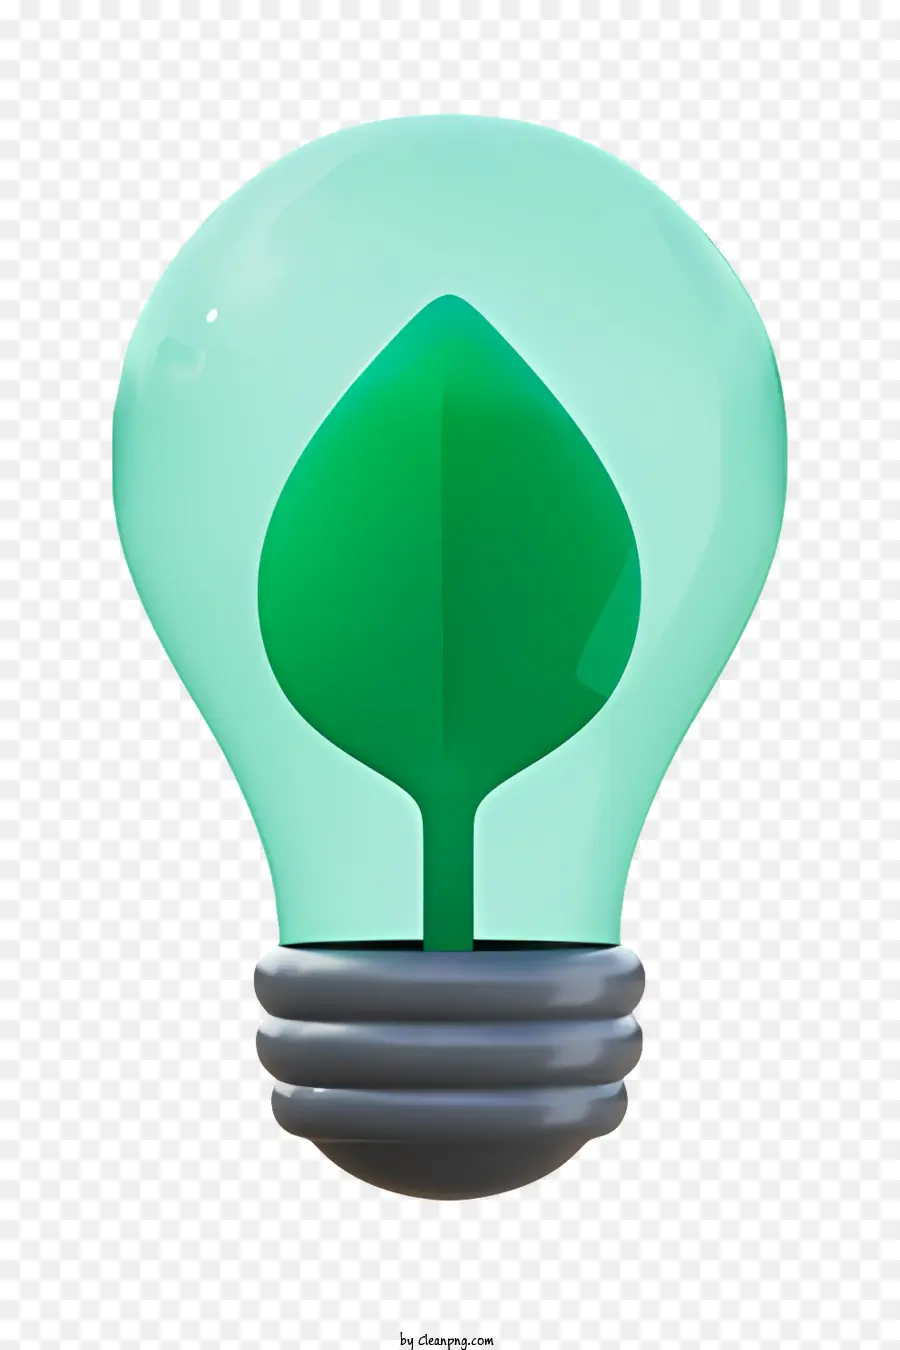 verde foglia - Foglia all'interno della lampadina, entrambi illuminati